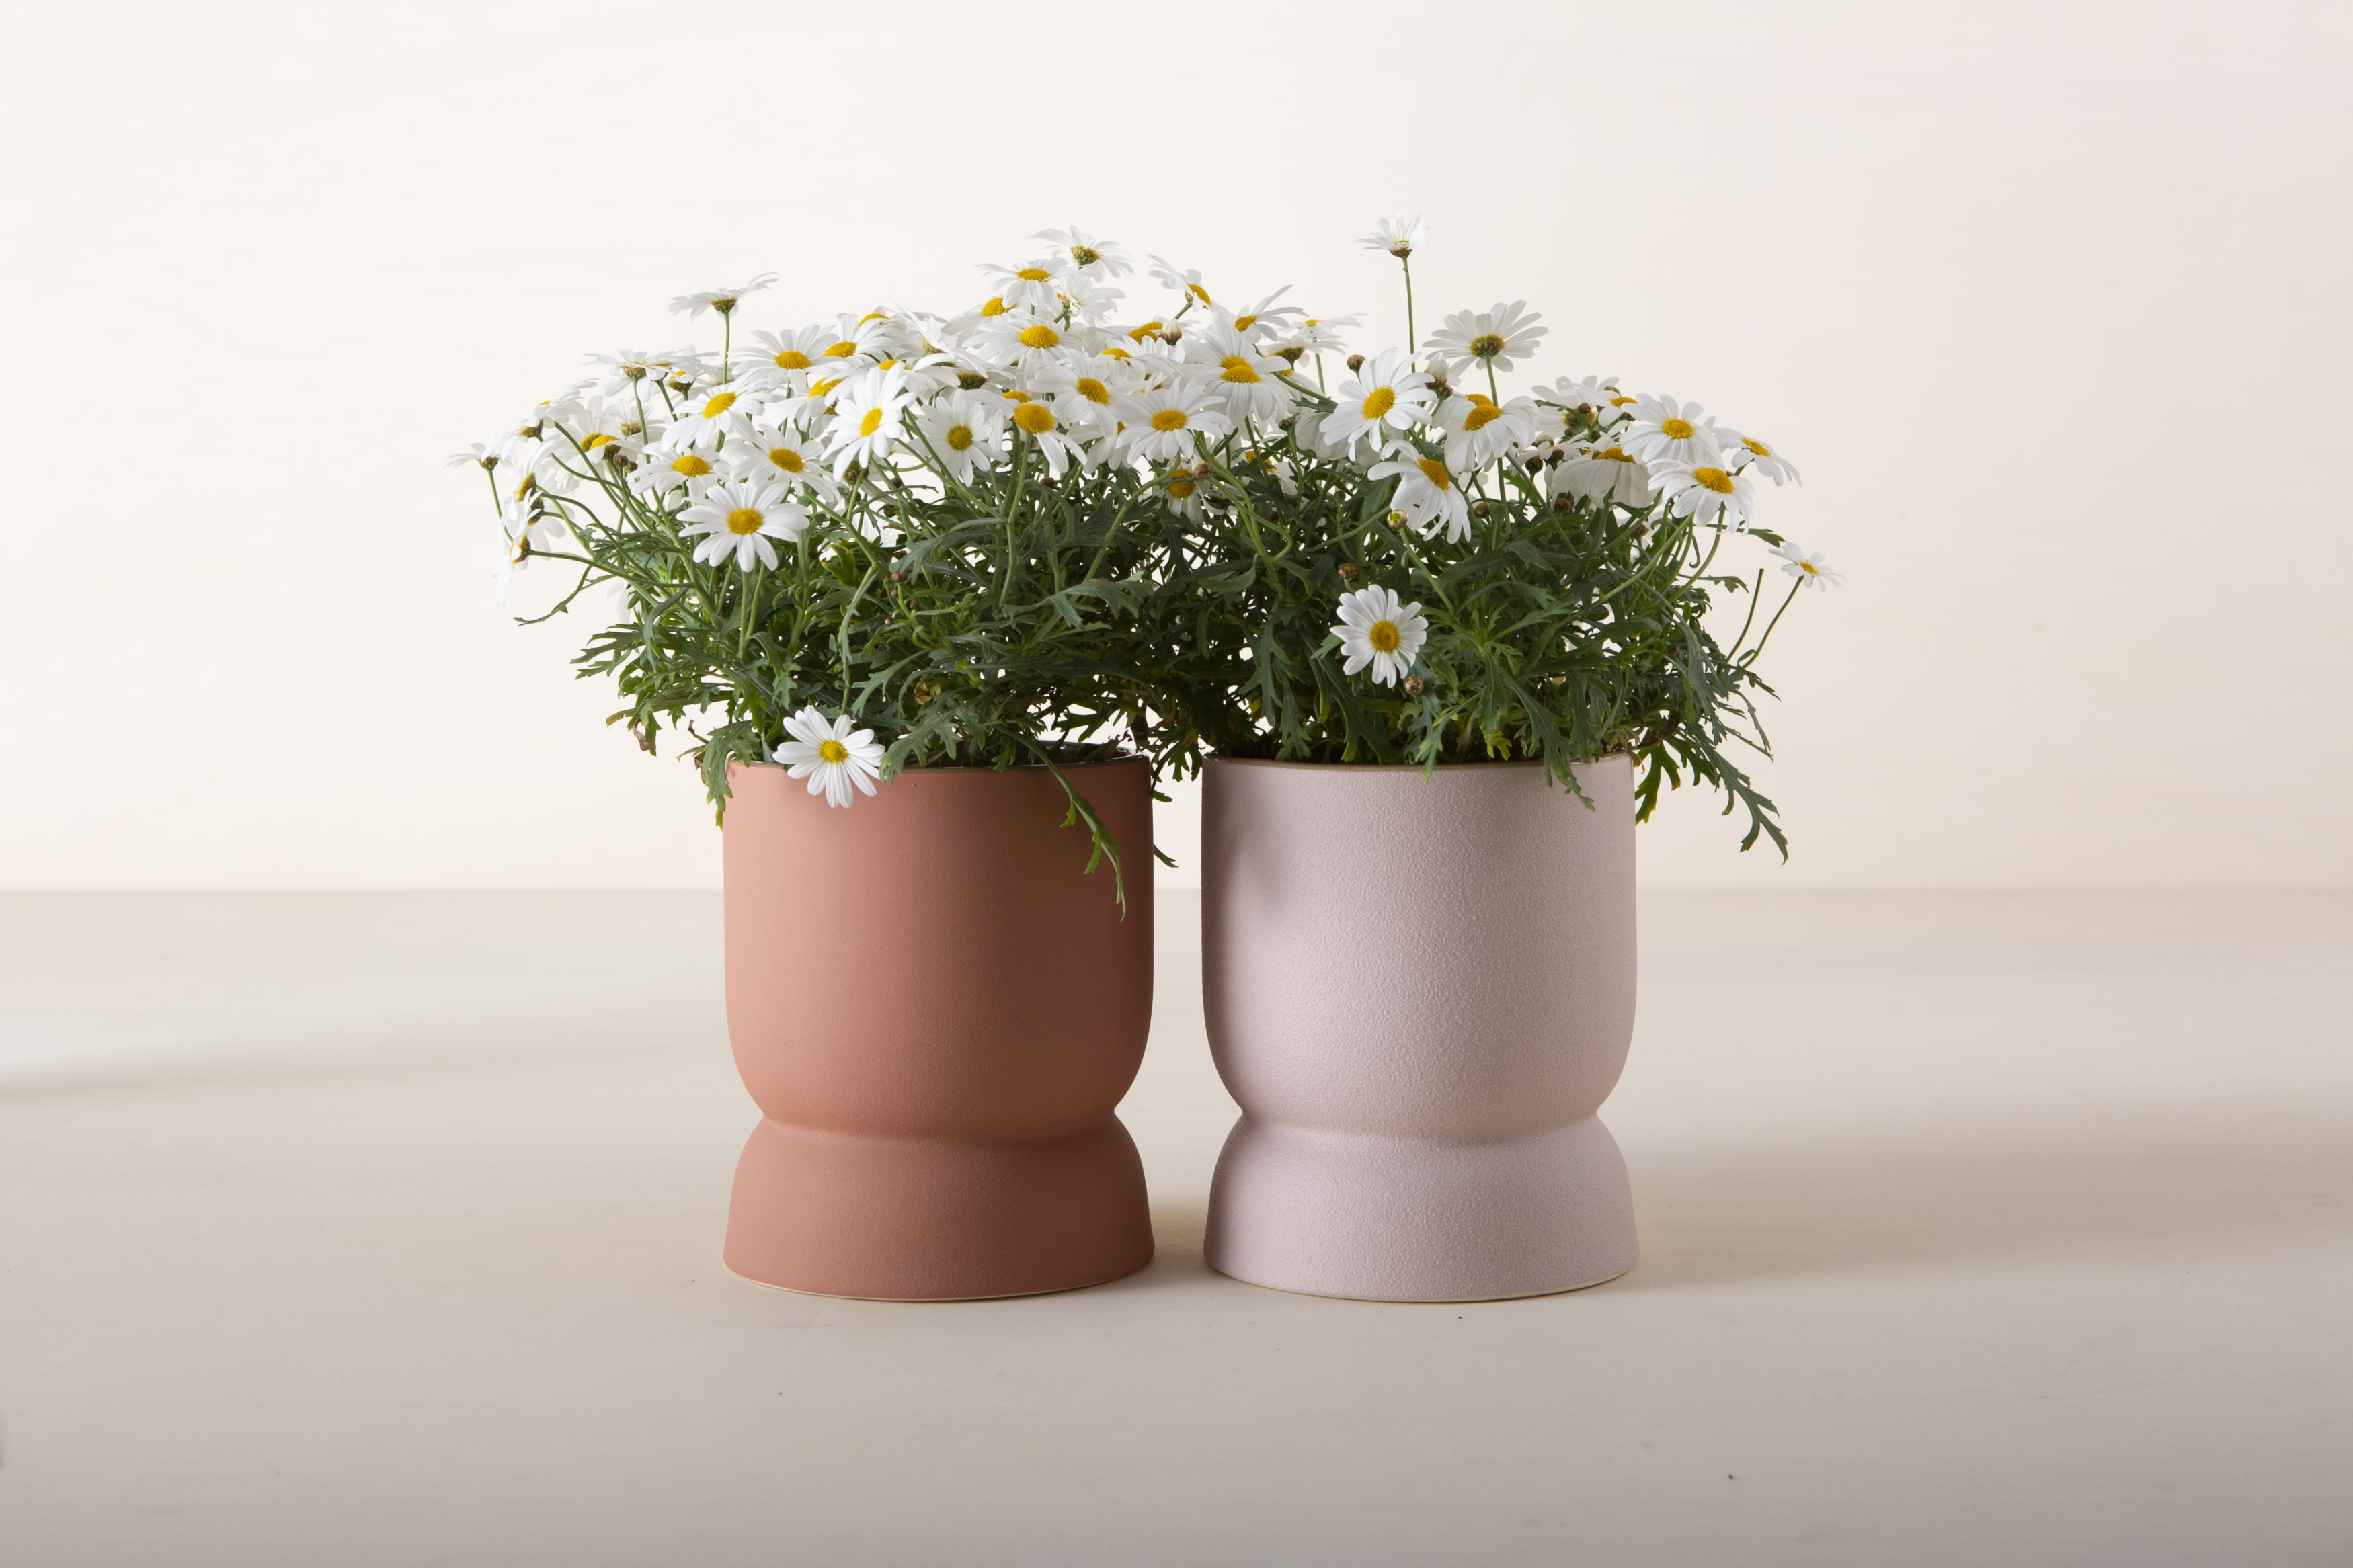 Dieser minimalistische Blumentopf oder -vase zeichnet sich durch klare Linien und ein niedliches Pünktchen-Muster aus